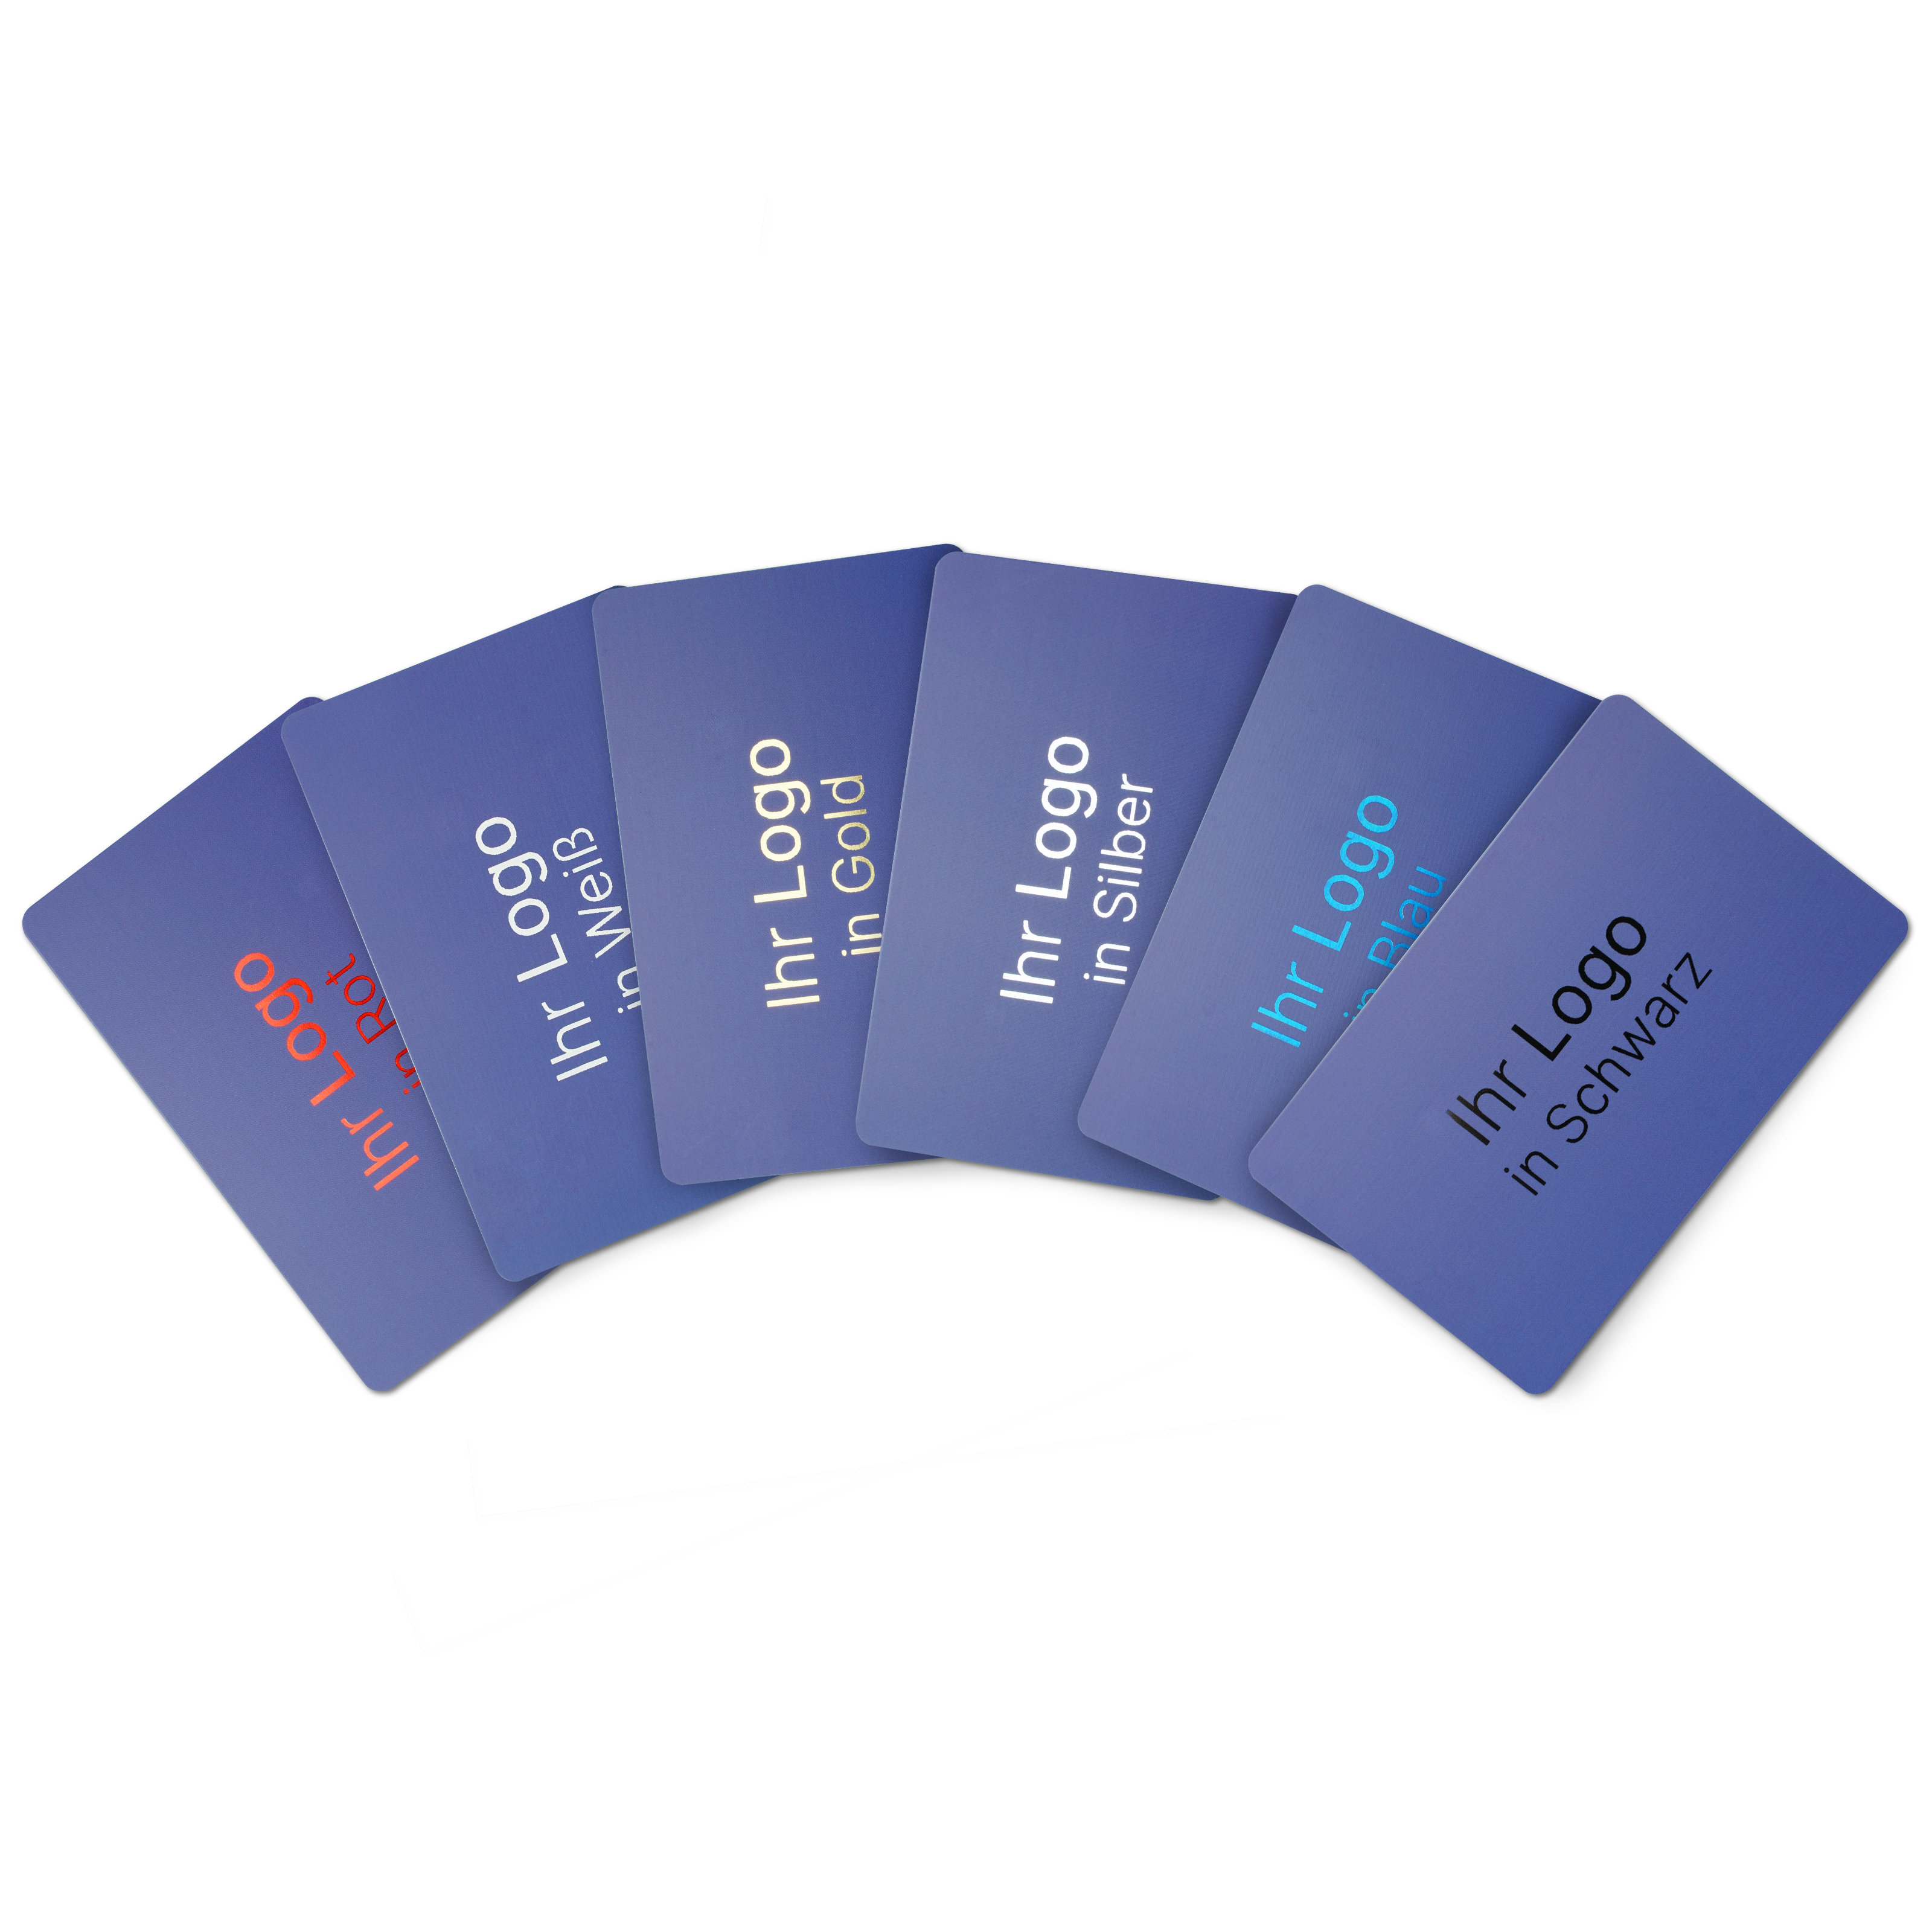 Online NFC business card PVC - incl. URL + print - blue matt